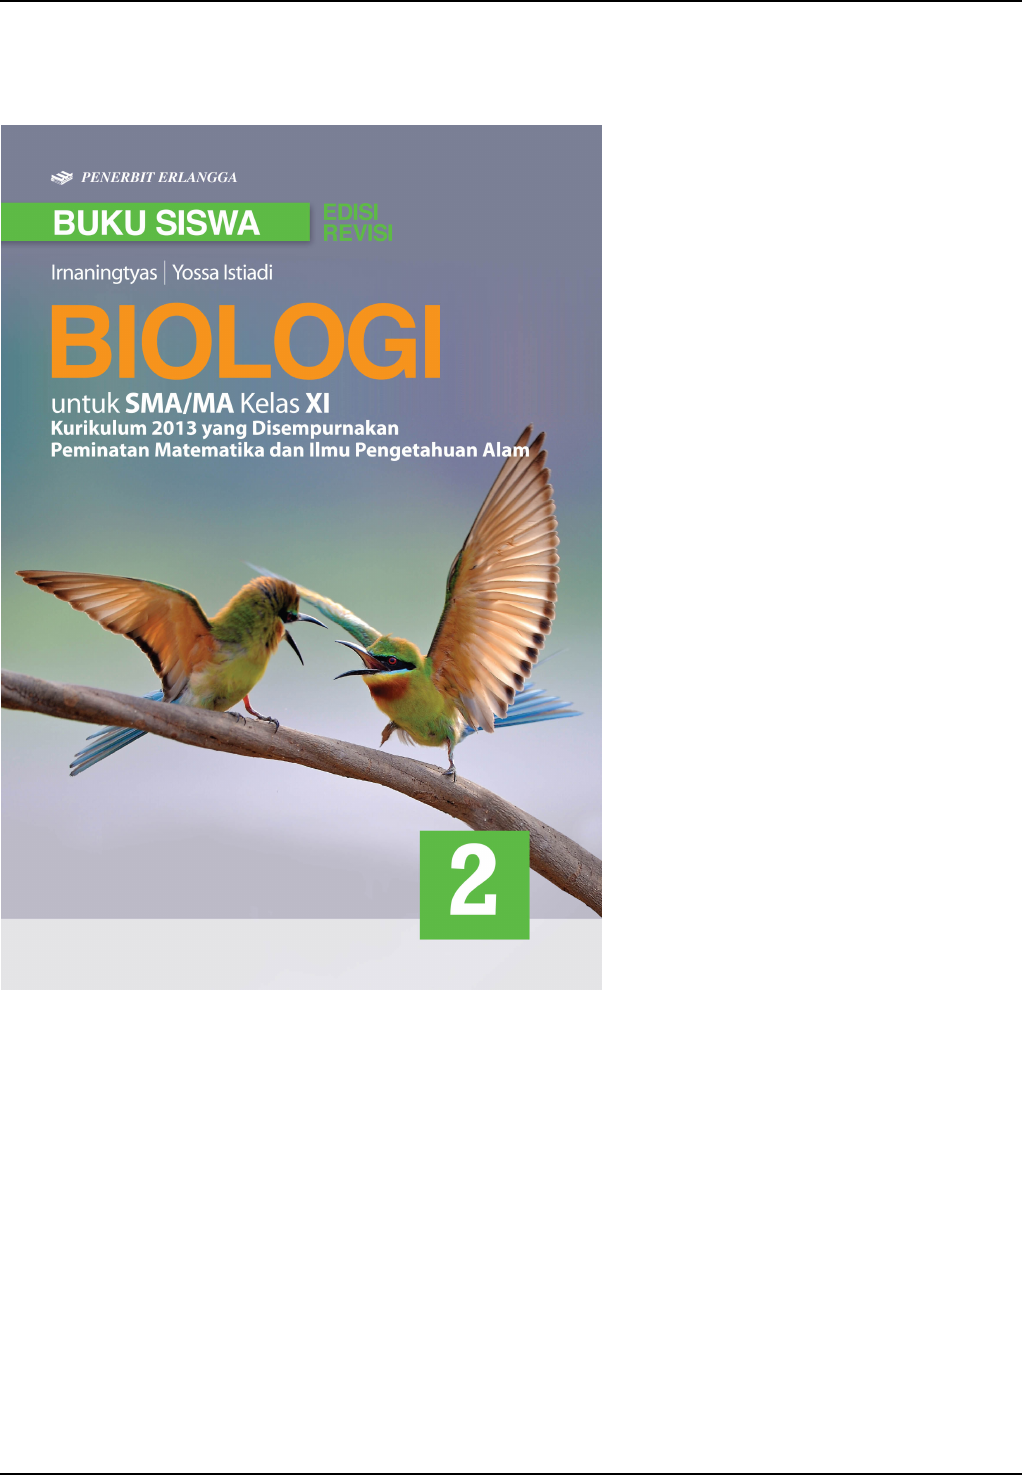 Download Buku Biologi Kelas 11 Penerbit Erlangga Pdf Irnaningtyas